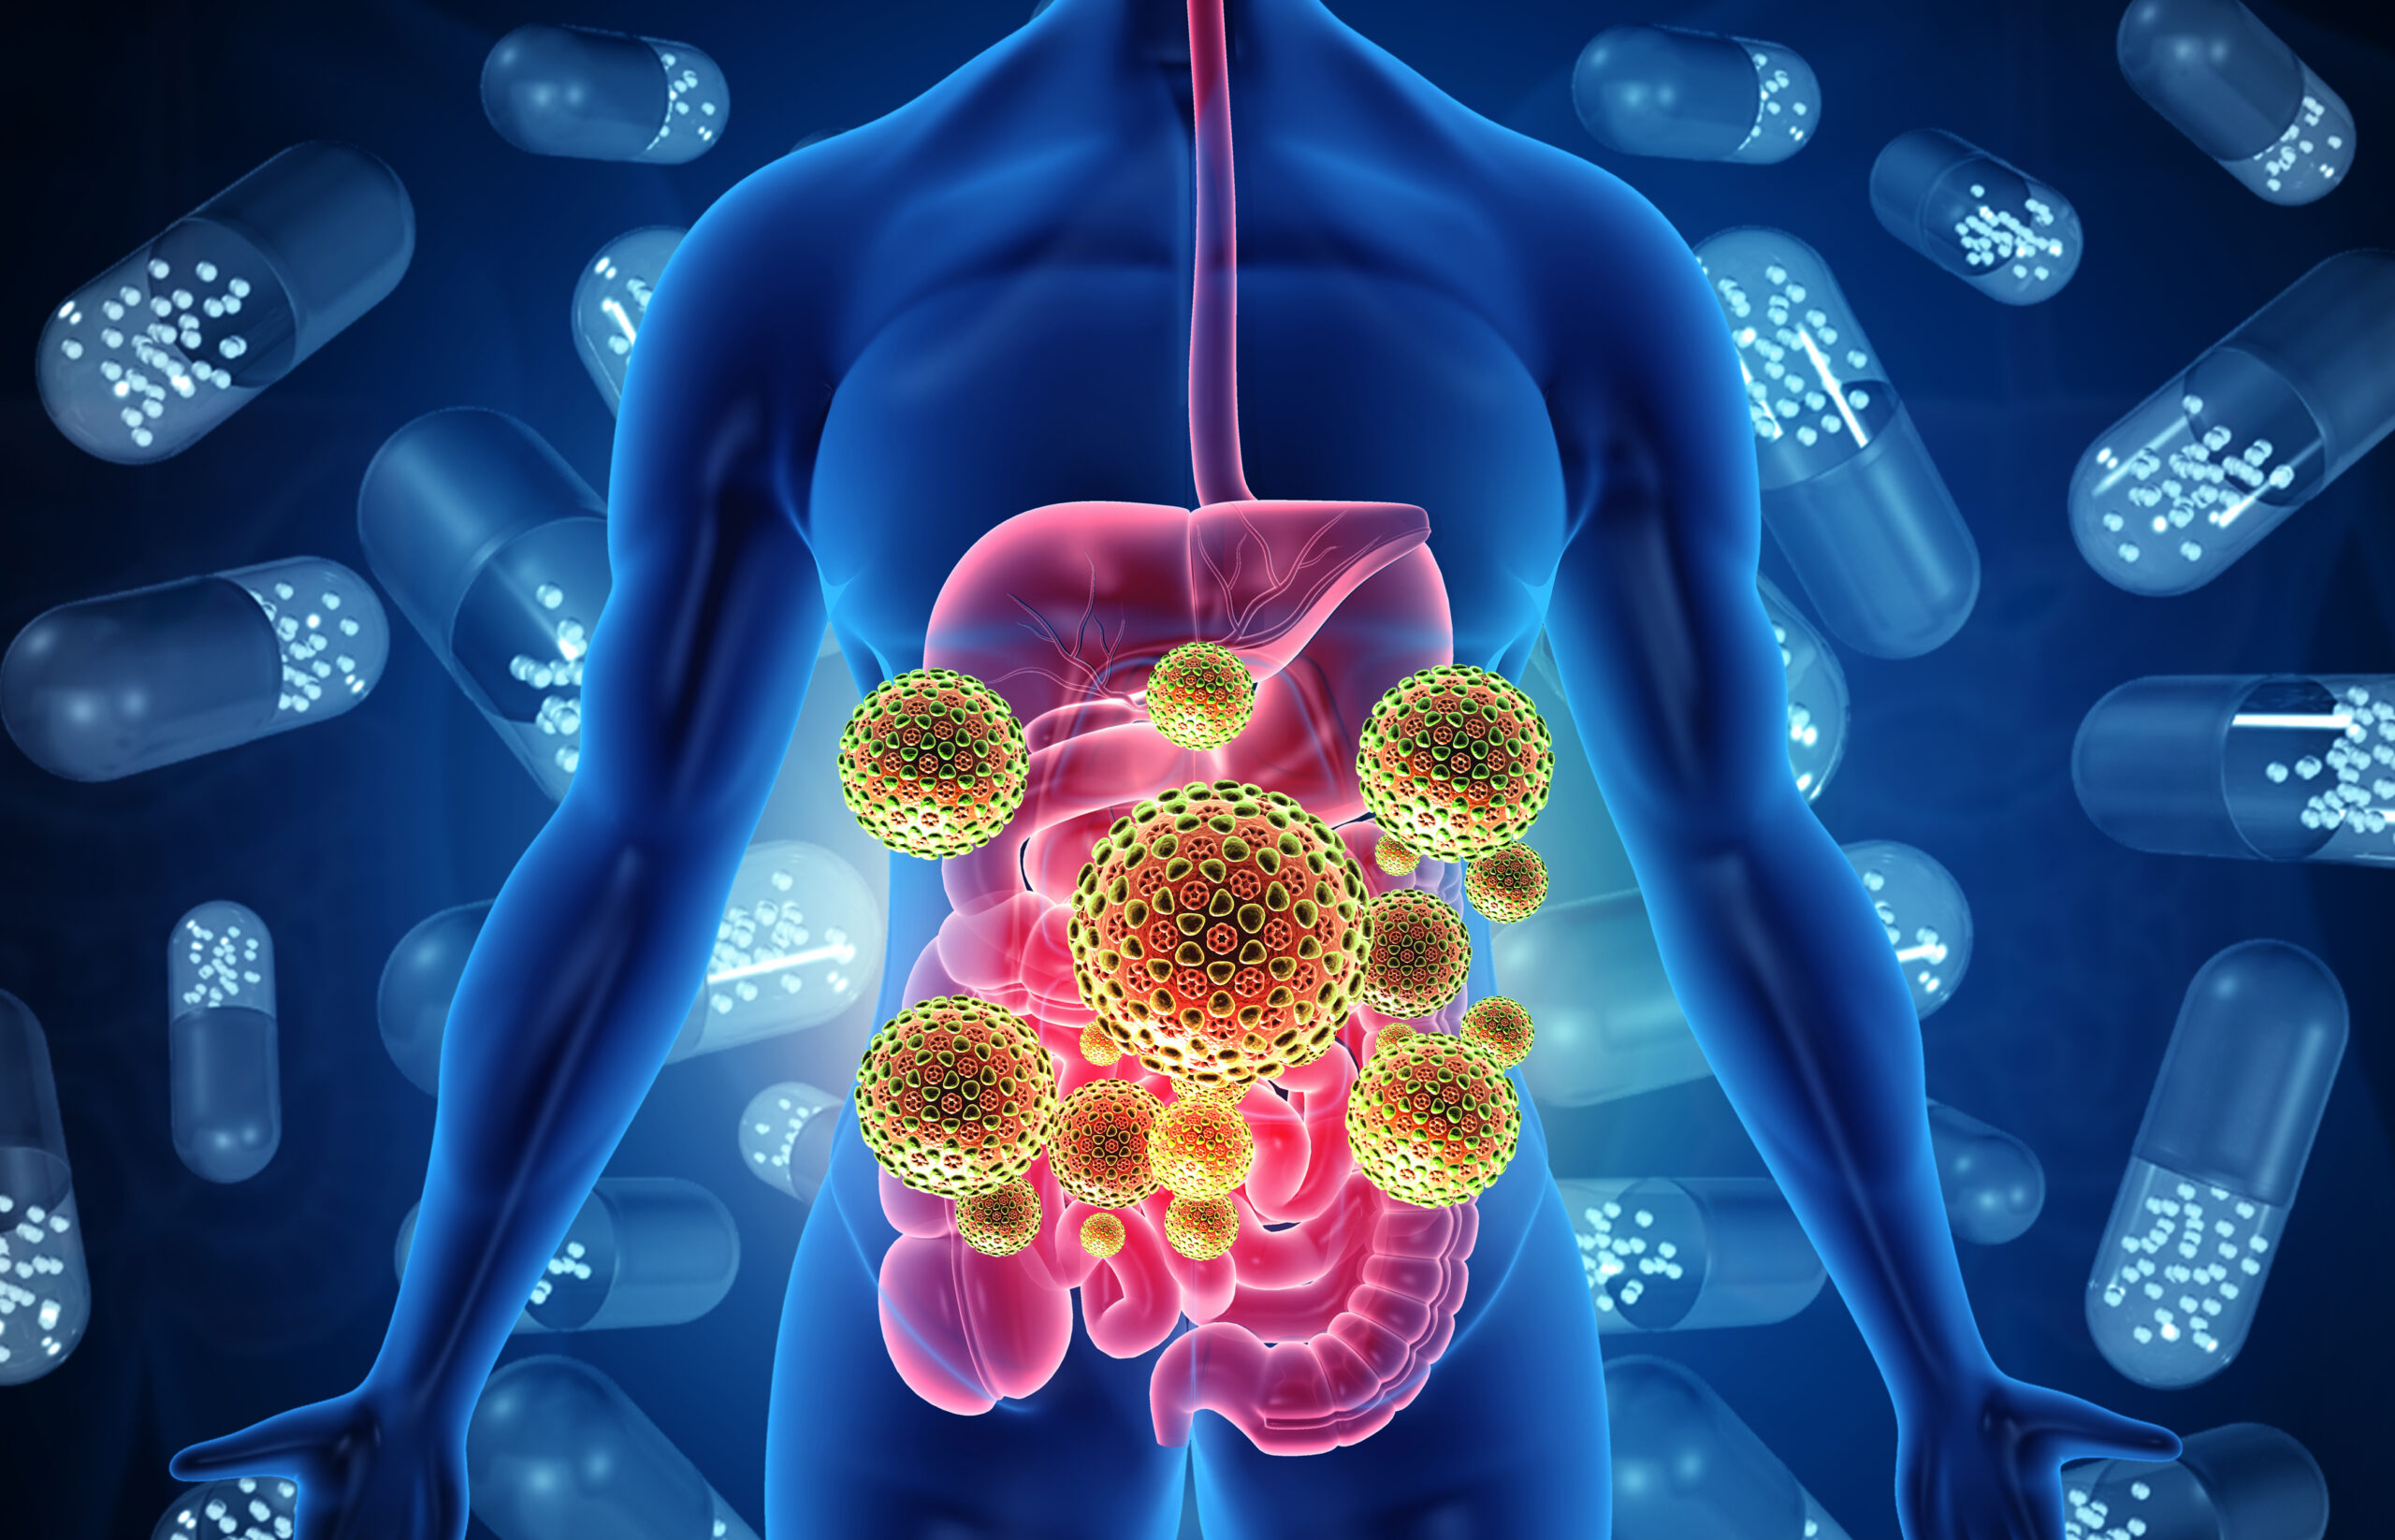 Microbiota intestinale e Covid-19 - possibile collegamento e implicazioni - Blog Bict Bioindustria